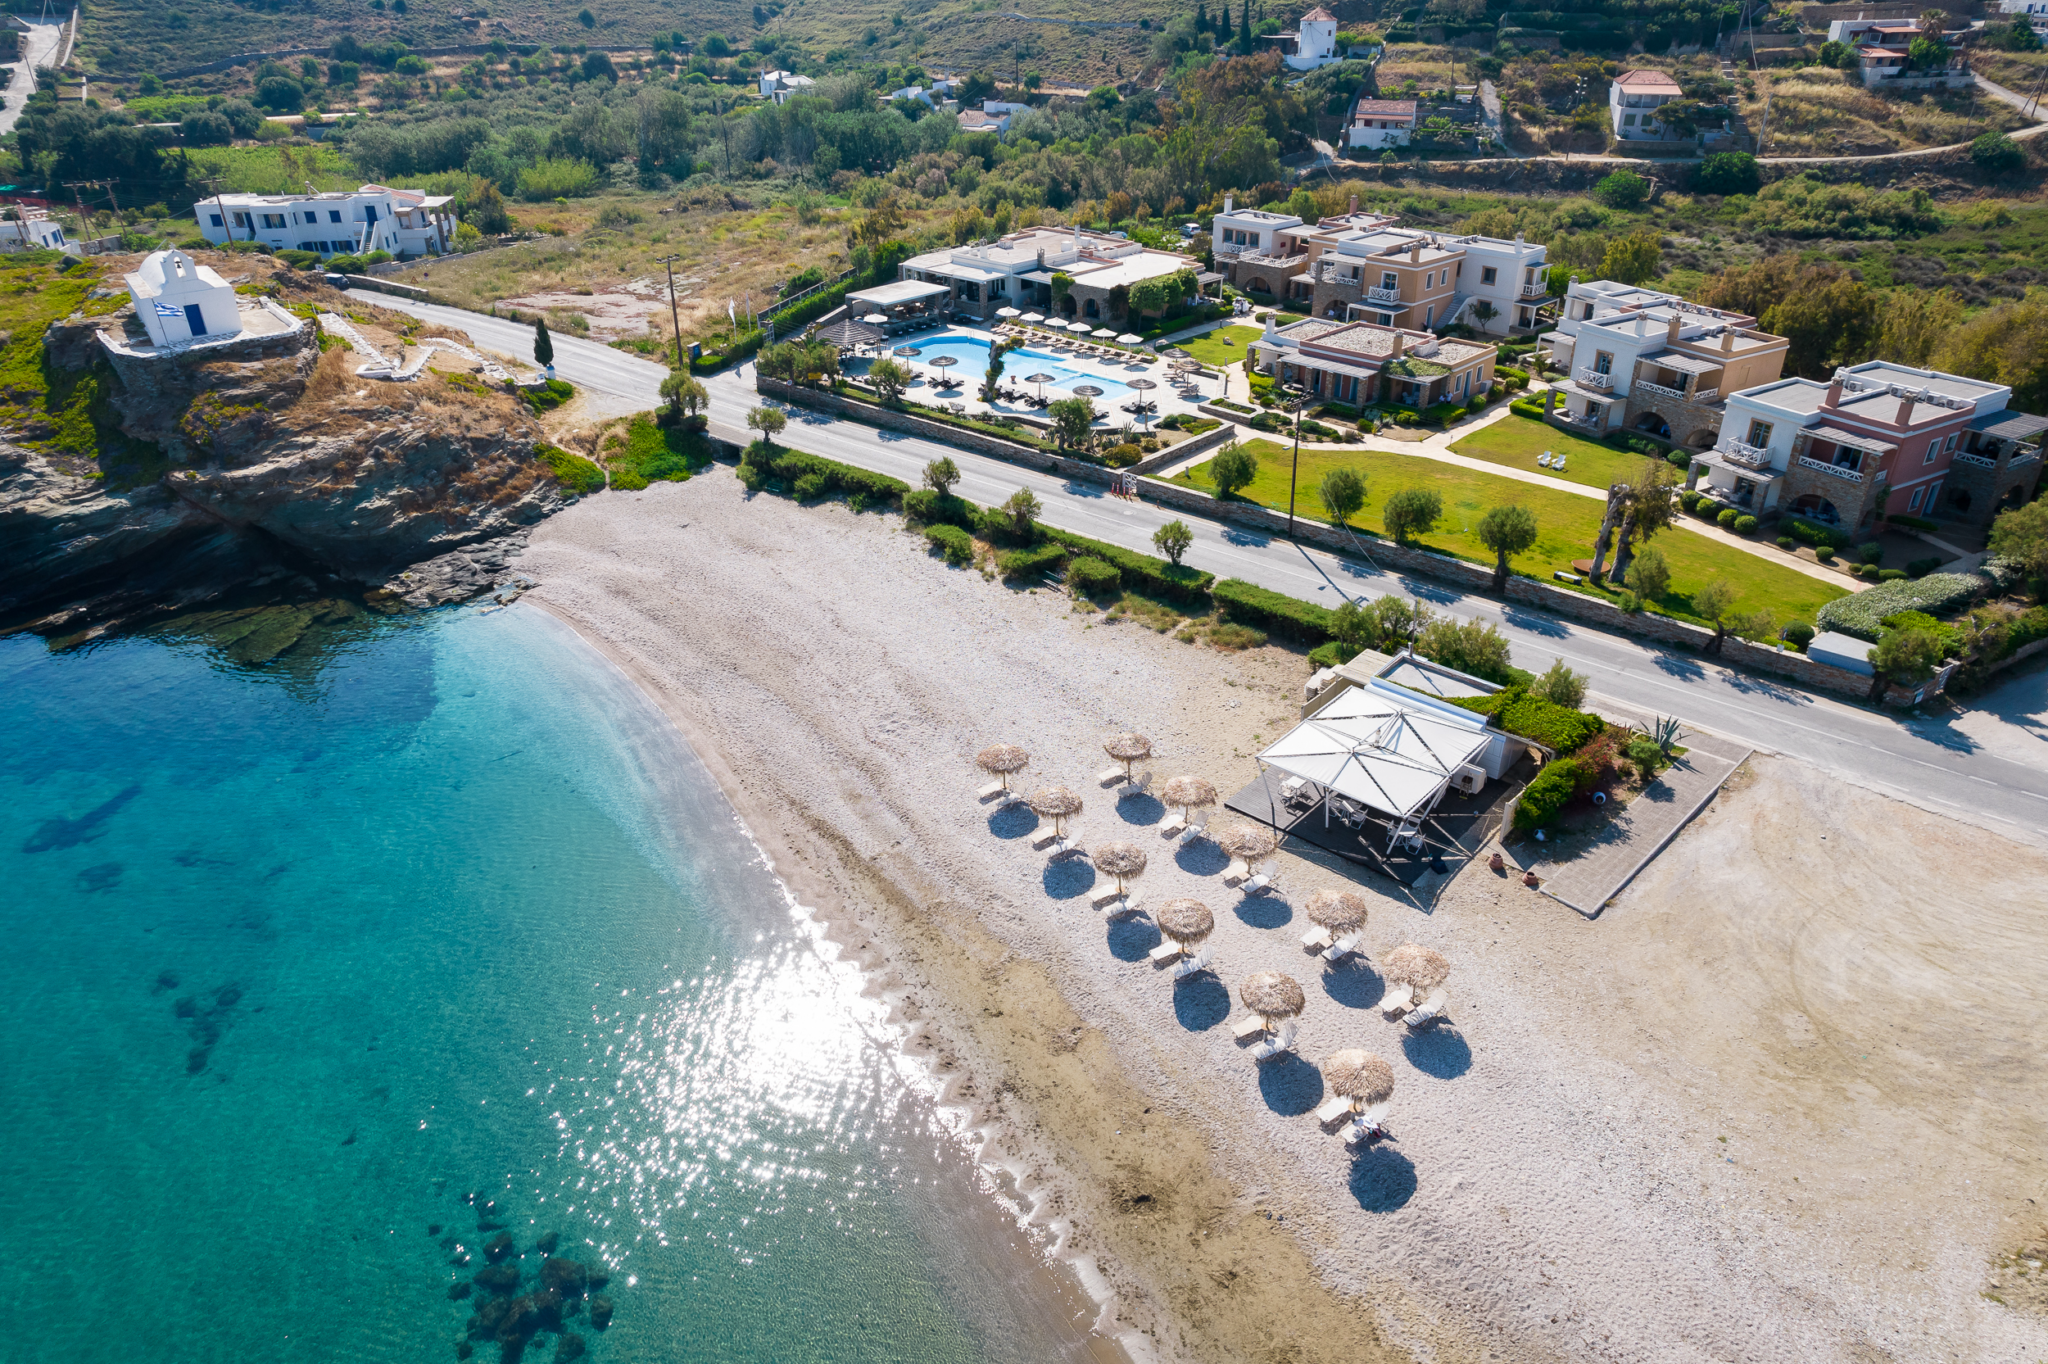 7 νέα ιδιαίτερα ξενοδοχεία σε όλη την Ελλάδα